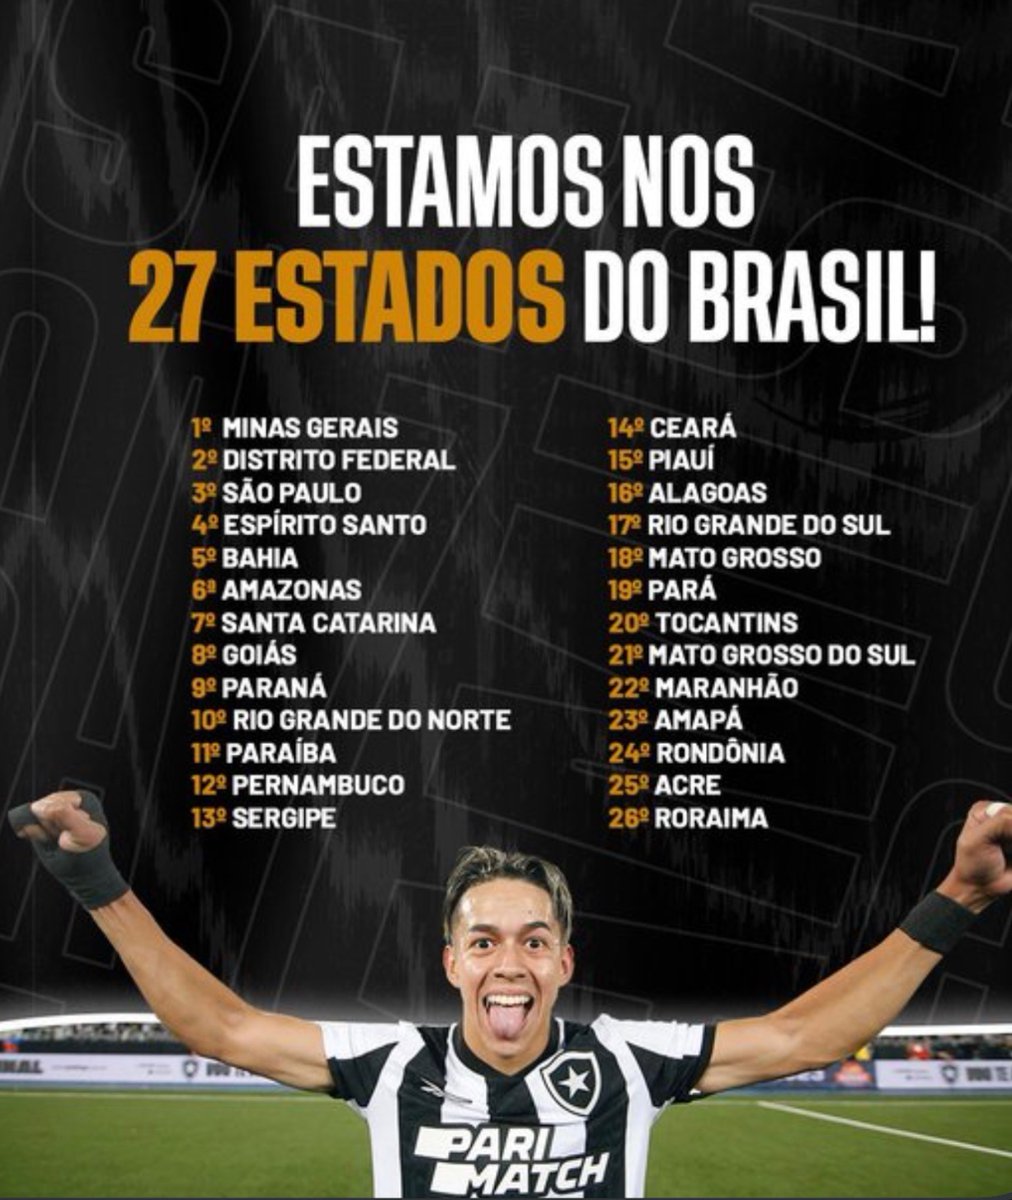 O Botafogo trouxe um dado importante hoje, batemos o recorde de sócios OFF Rio, somos mais de 7.000 associados espalhados por 27 estados do Brasil. 
Acredito muito que esse número tem margem para crescimento.